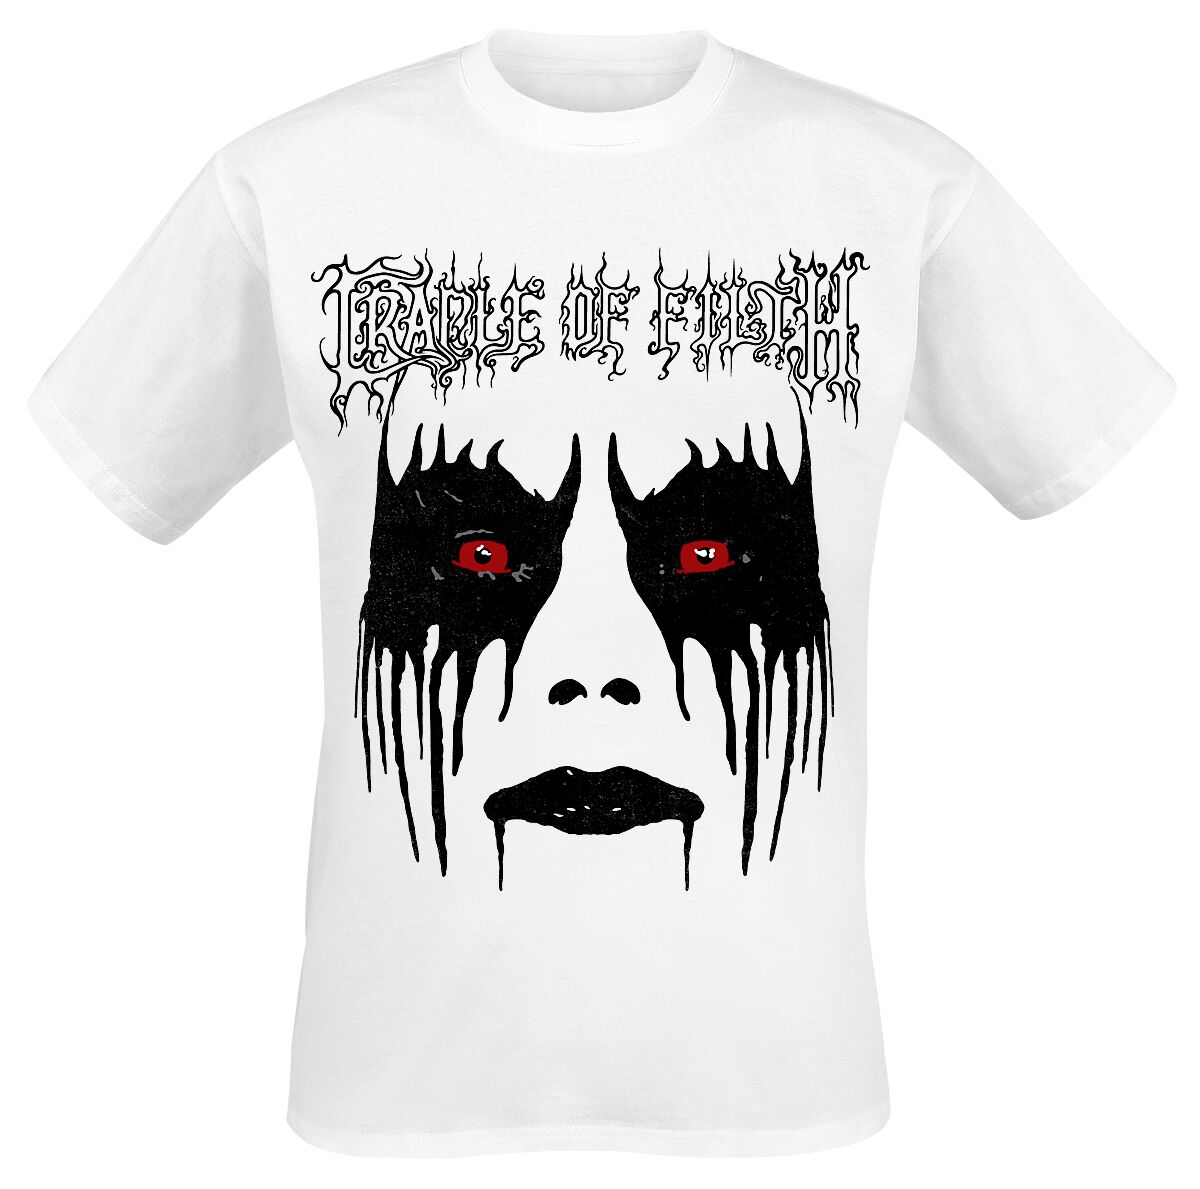 T-Shirt Manches courtes de Cradle Of Filth - Dani Make Up - S à XXL - pour Homme - blanc